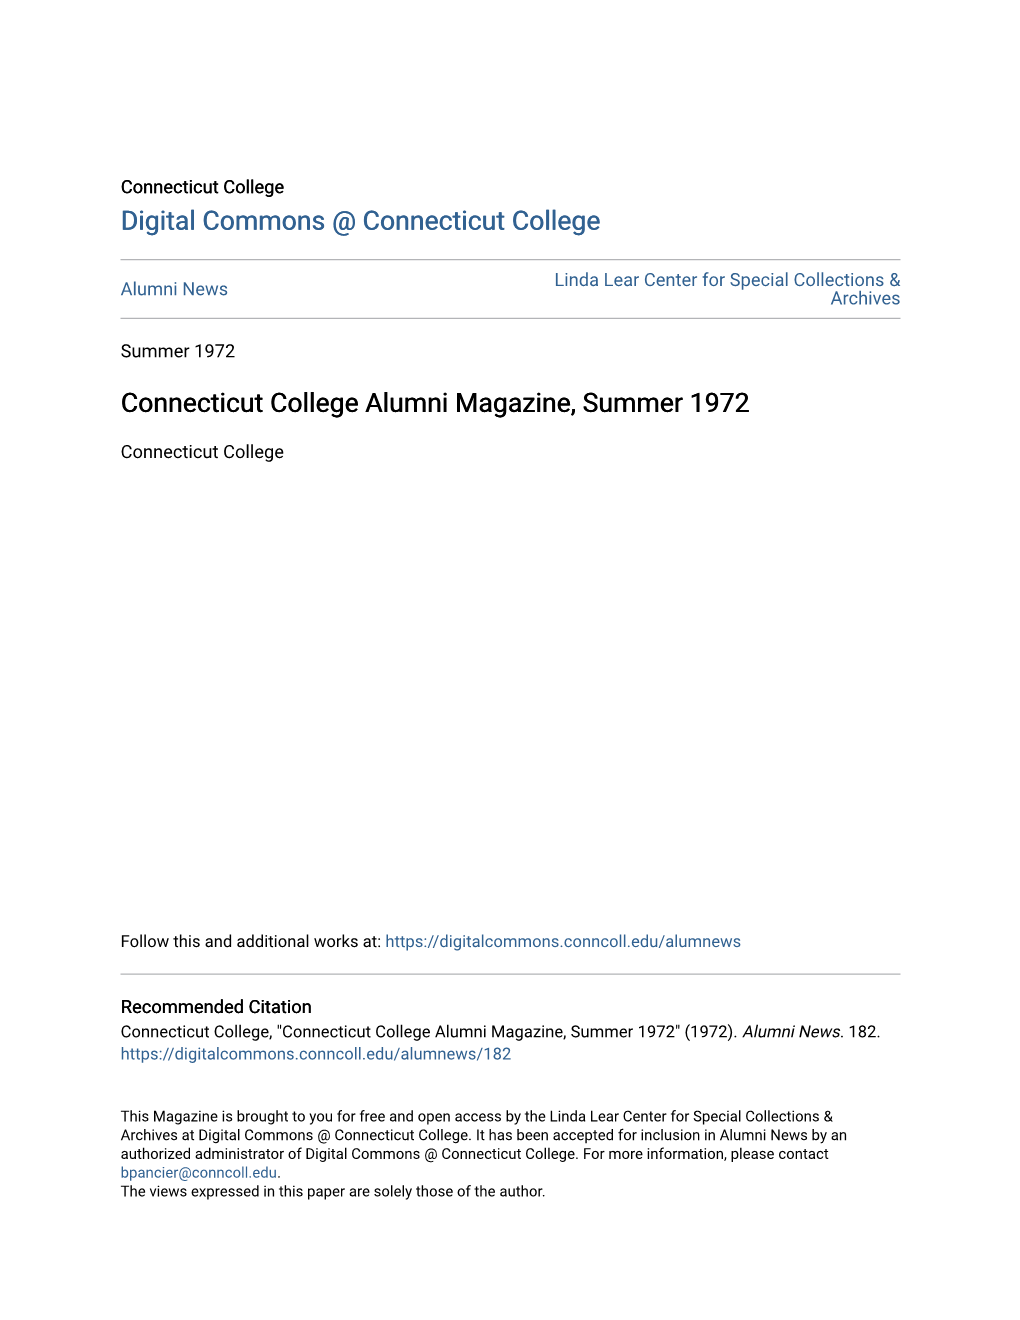 Connecticut College Alumni Magazine, Summer 1972